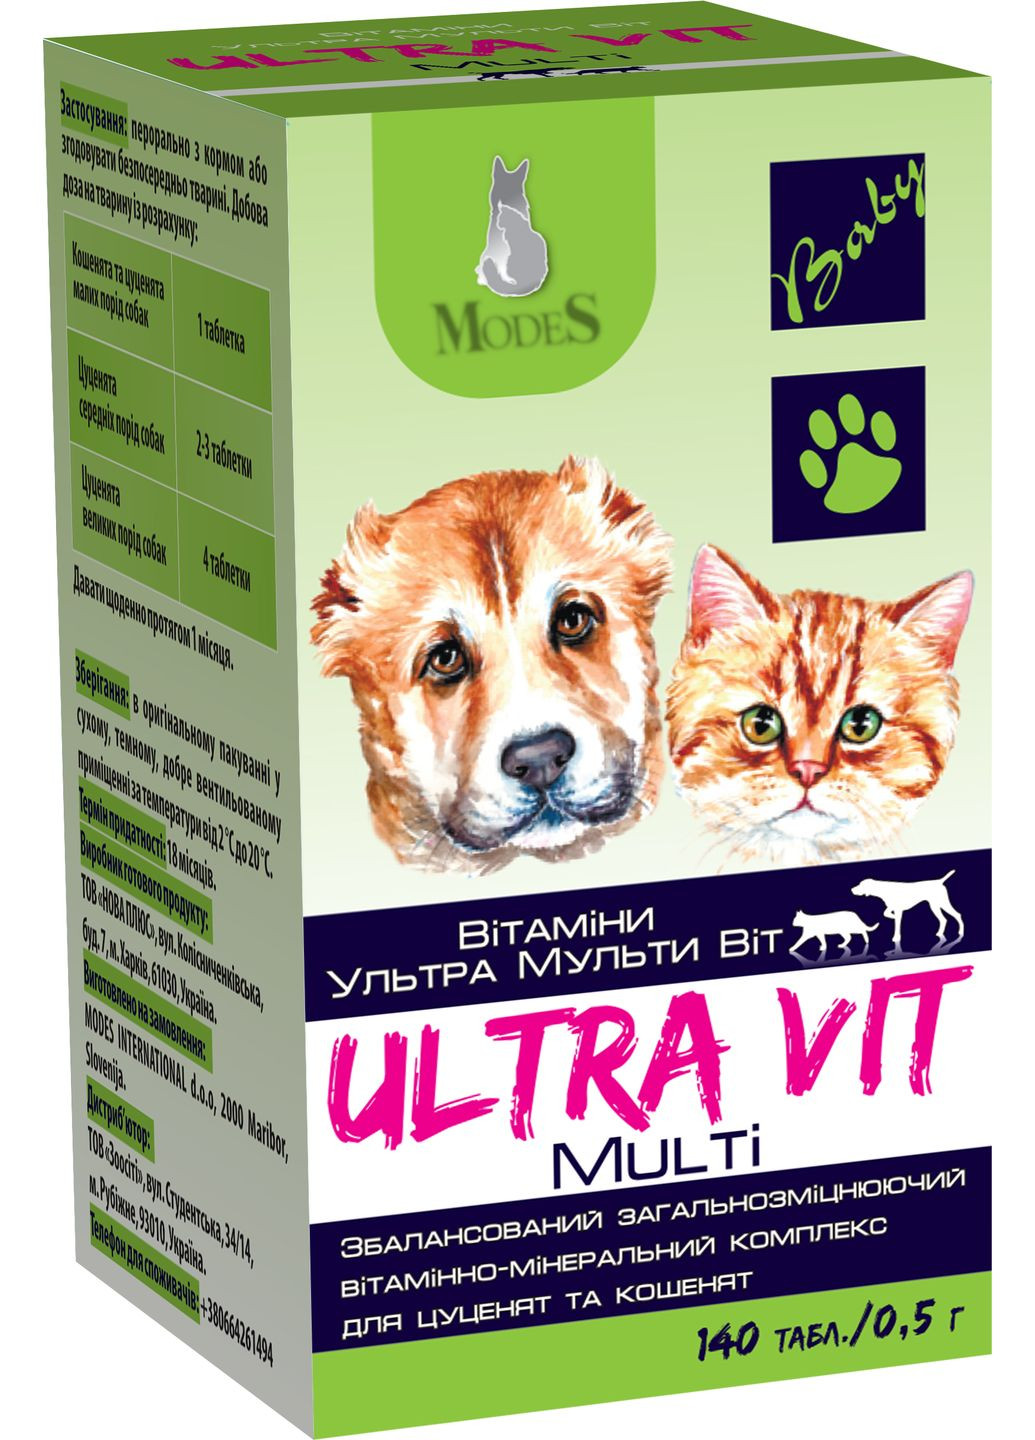 Вітамінномінеральний комплекс Ultra Multi Vit для цуценят та кошенят 140 таблеток по 0.5 г (4820254820171) ModeS (279564988)